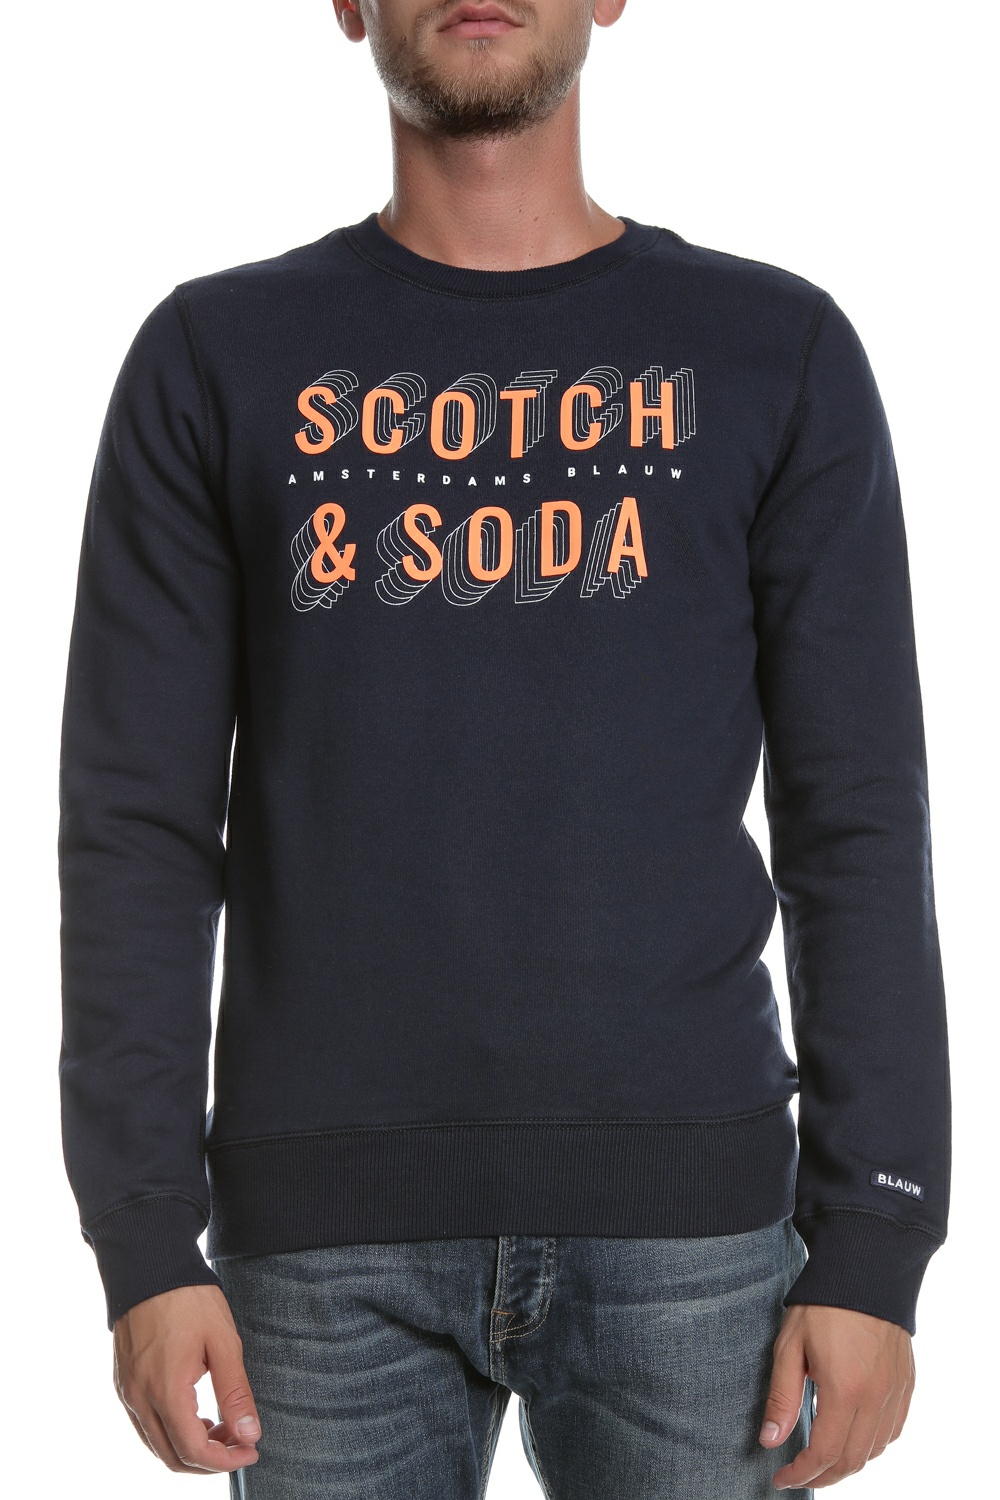 SCOTCH & SODA SCOTCH & SODA - Ανδρική φούτερ μπλούζα SCOTCH & SODA μπλε